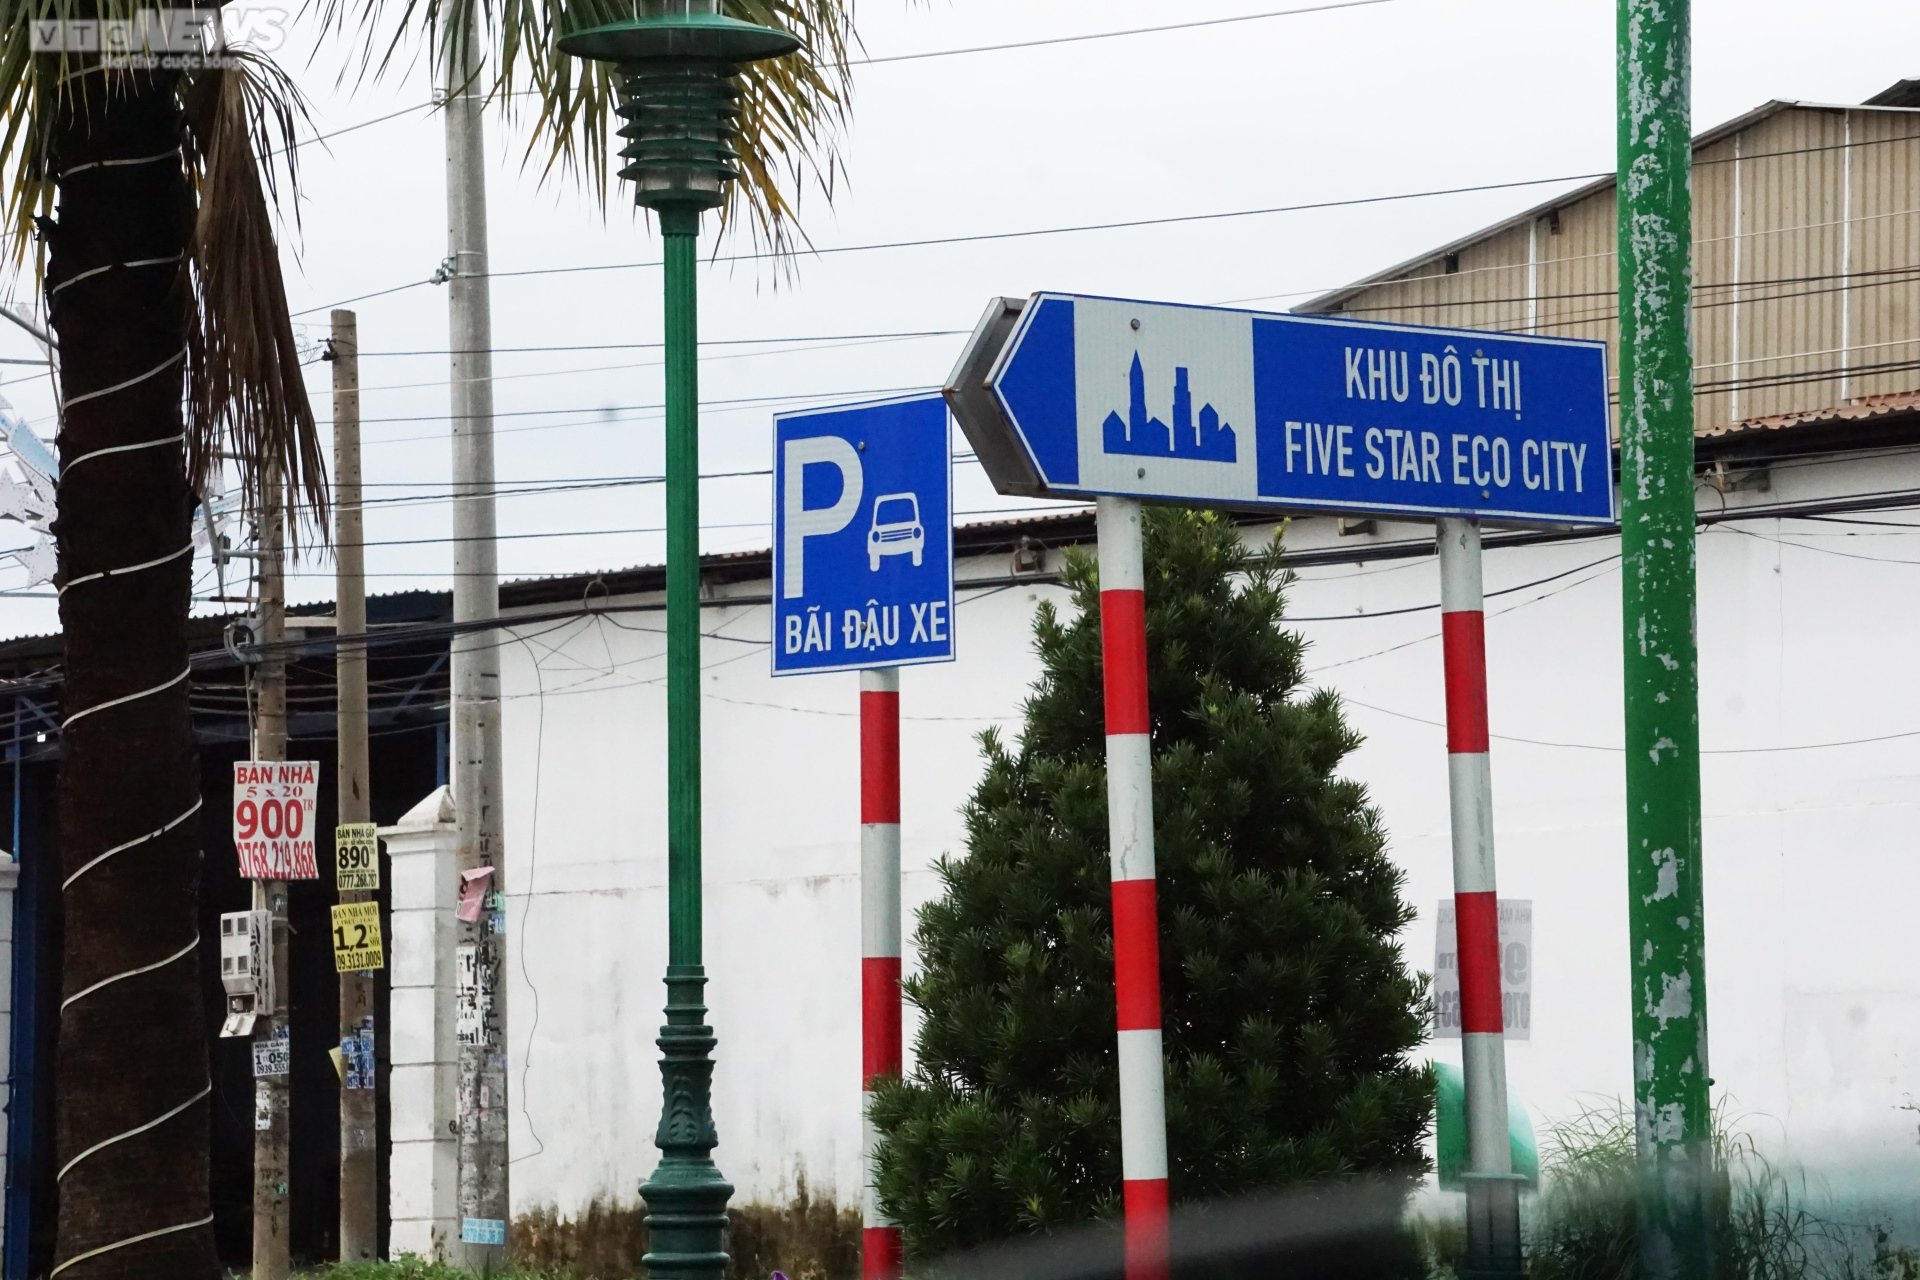 Toàn cảnh dự án Five Star Eco City dính loạt sai phạm vừa bị Bộ TN&MT 'sờ gáy' - 17